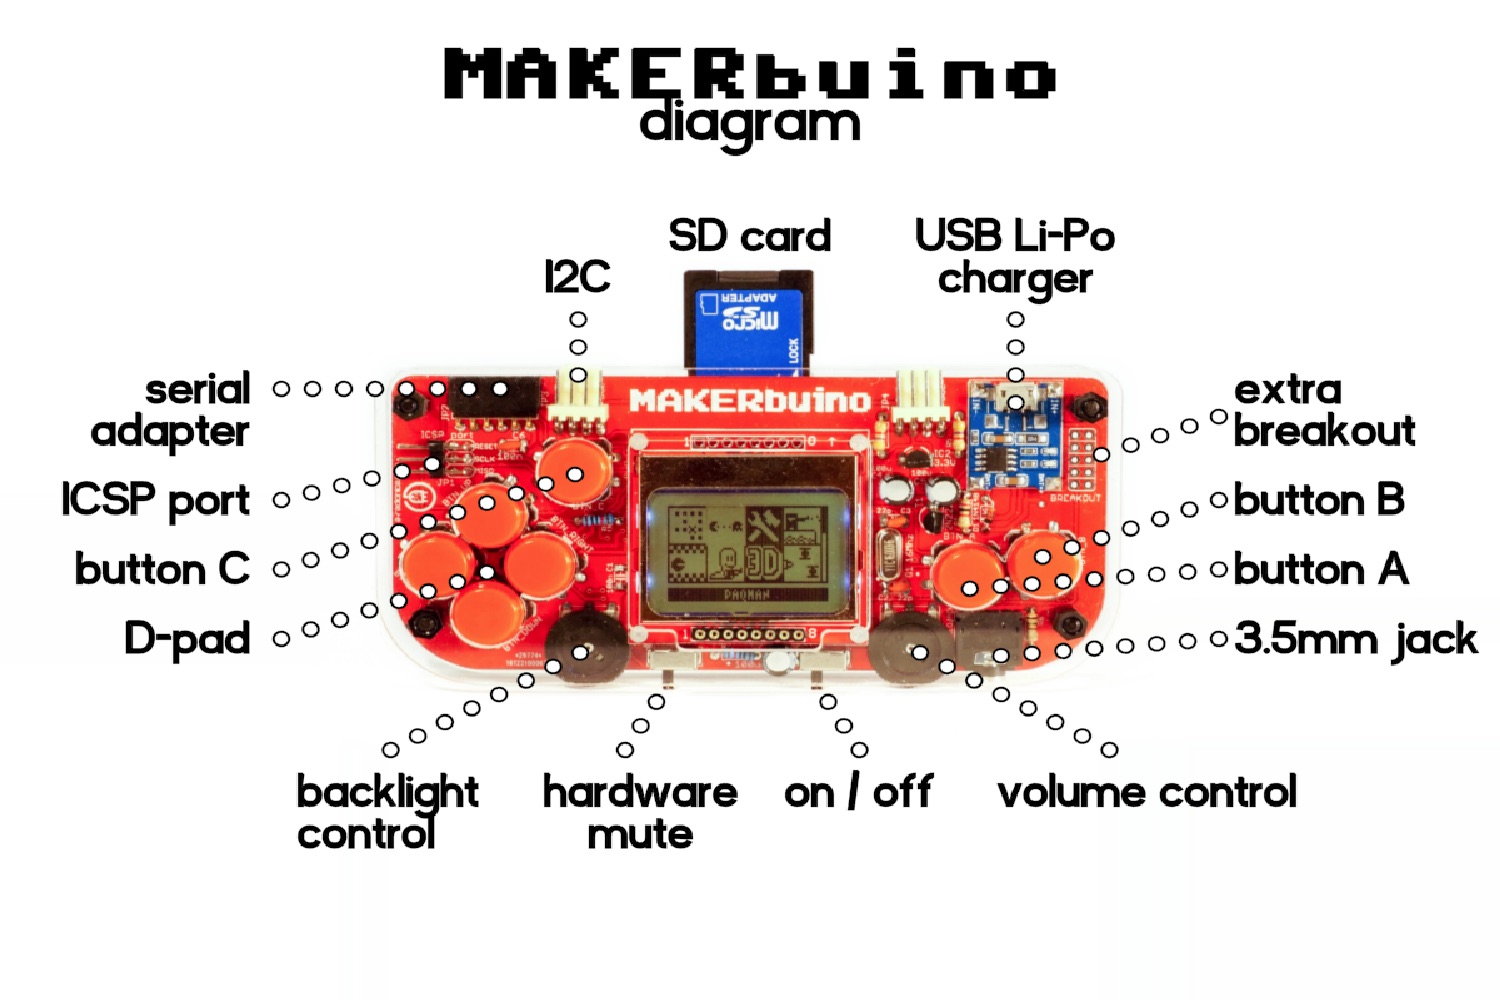 makerbuino handheld gaming kickstarter diagram